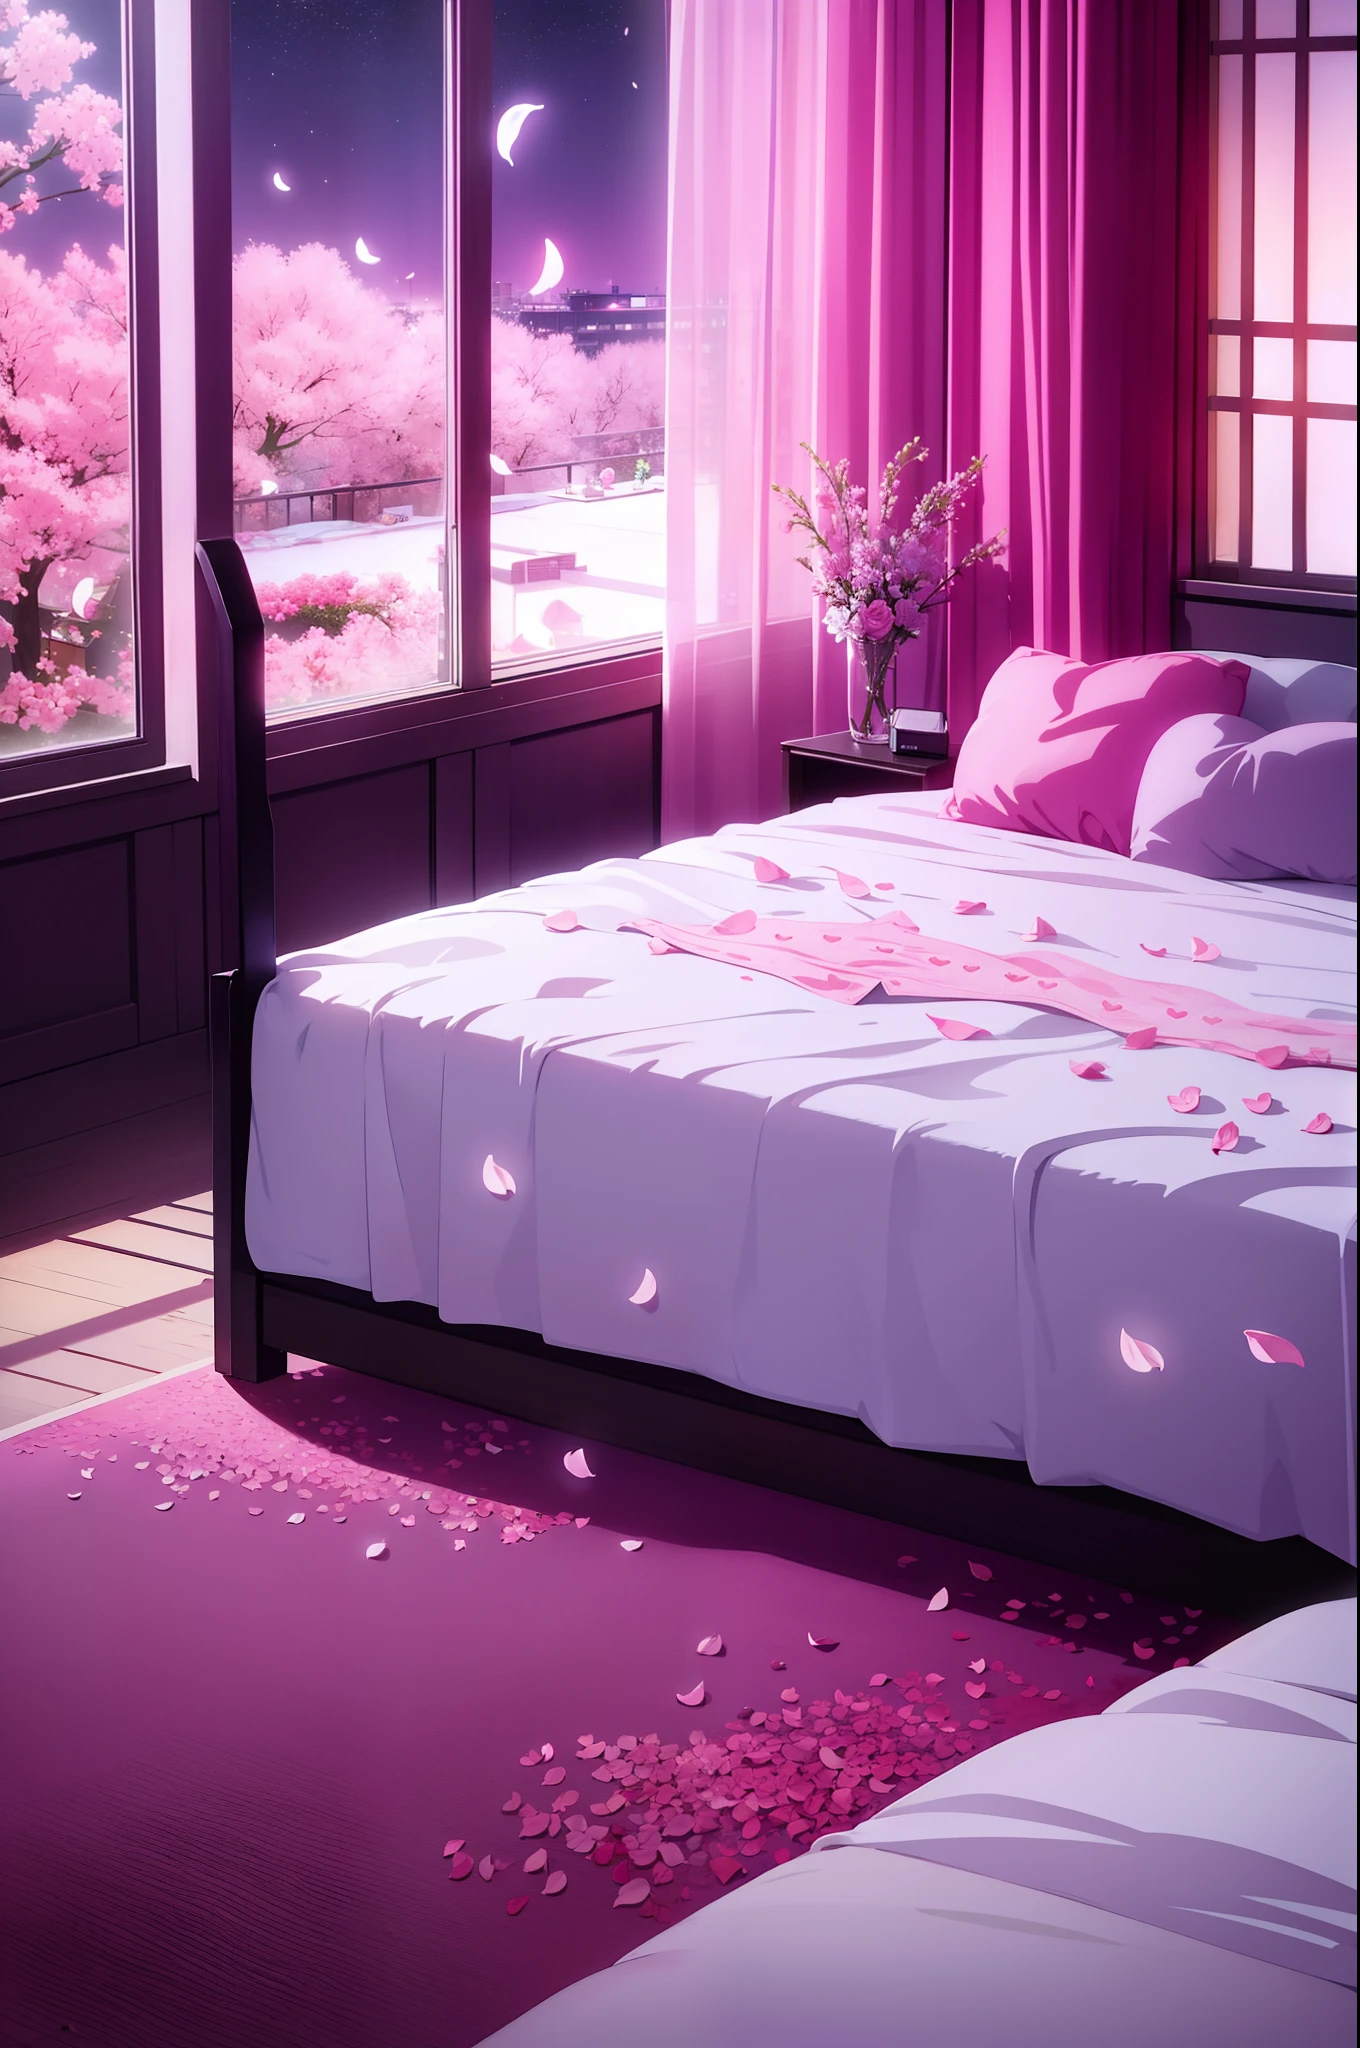 床上散落着花瓣的性感房间景观, 心形床, 窗户上的夜空, 粉红光, 爱情酒店, 避孕套袋, 湿床